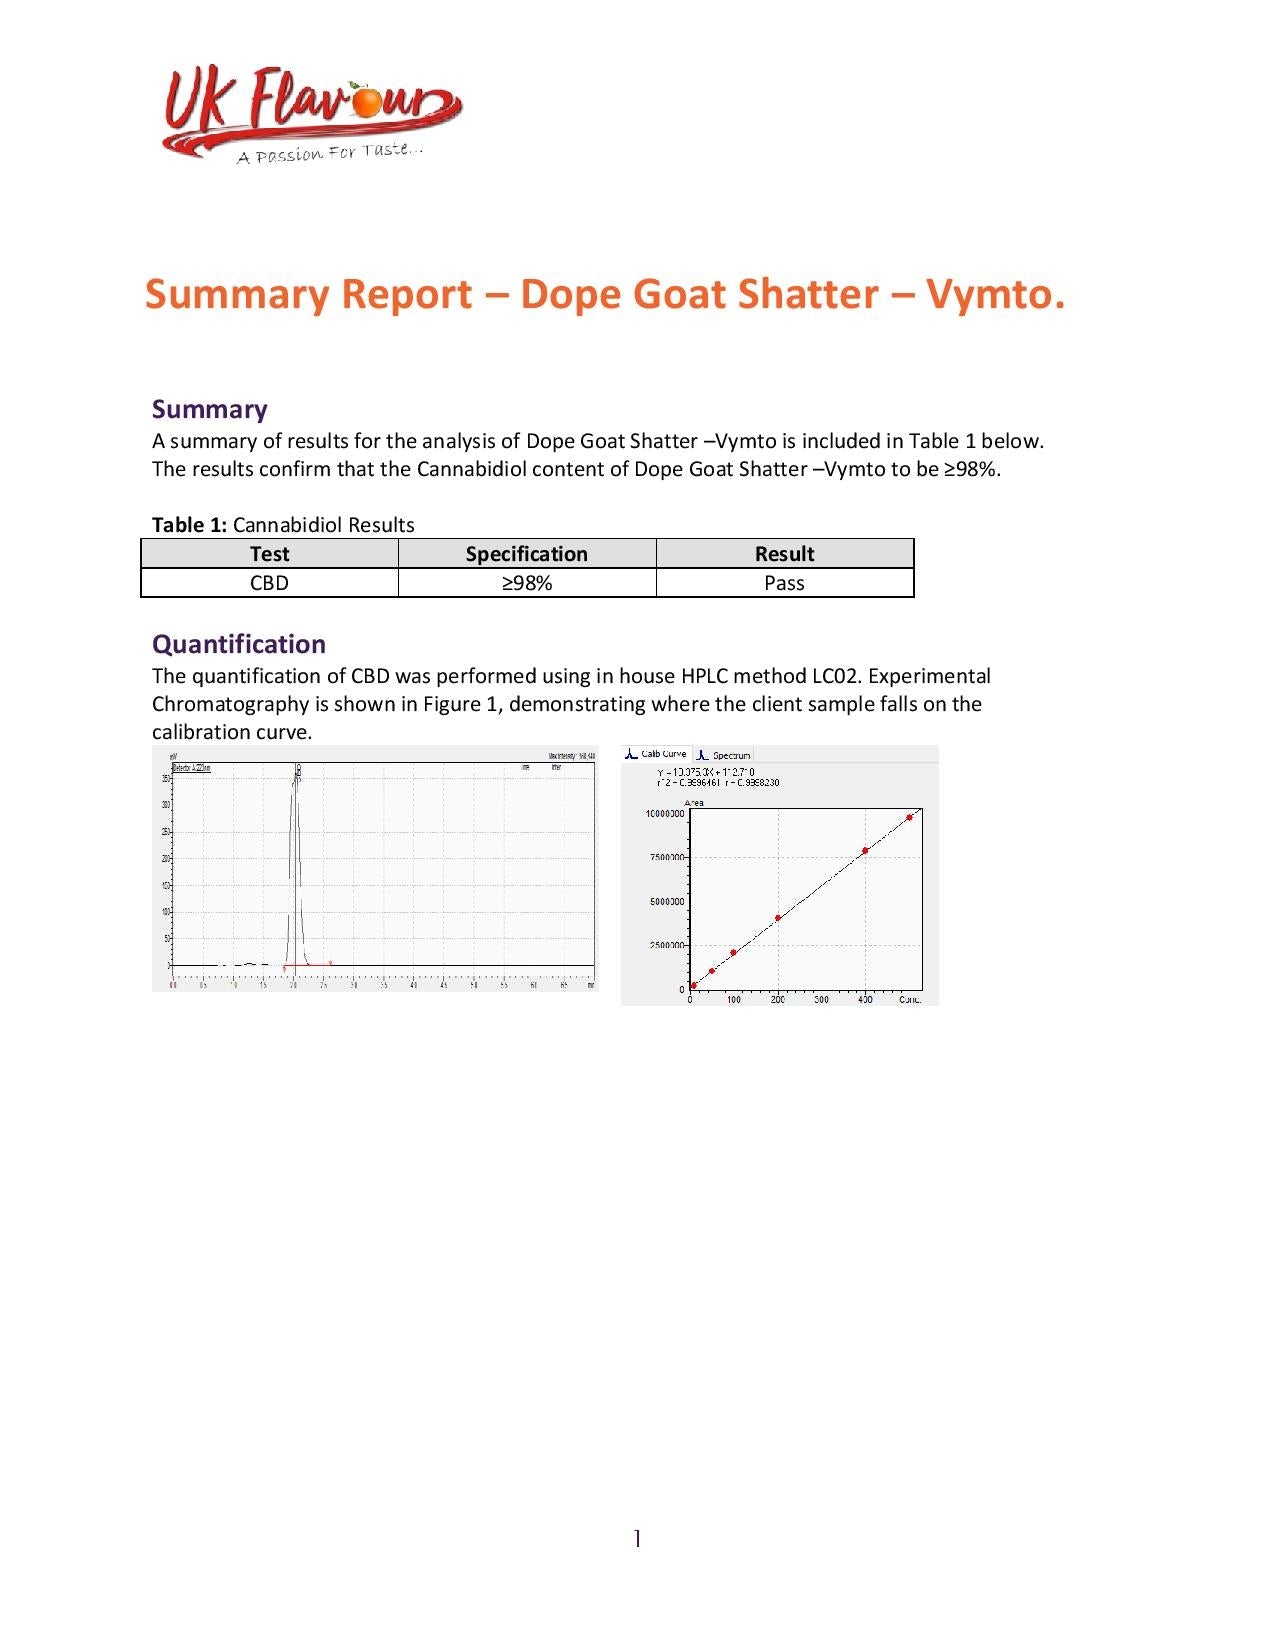 Goat Shatter 98% CBD 1g